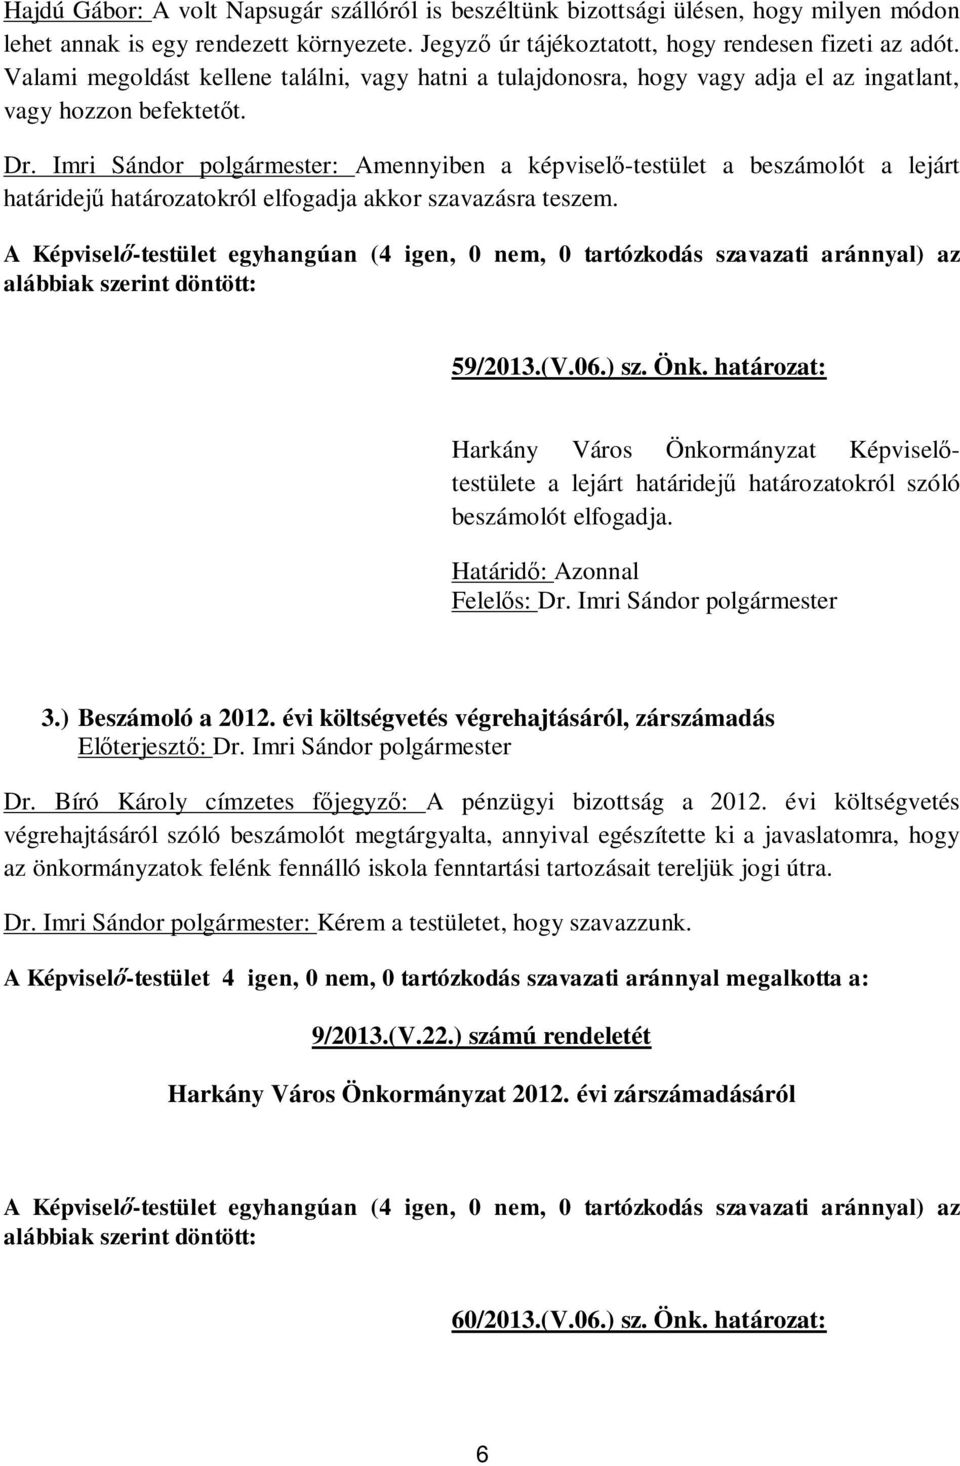 Imri Sándor polgármester: Amennyiben a képvisel -testület a beszámolót a lejárt határidej határozatokról elfogadja akkor szavazásra teszem. 59/2013.(V.06.) sz. Önk.